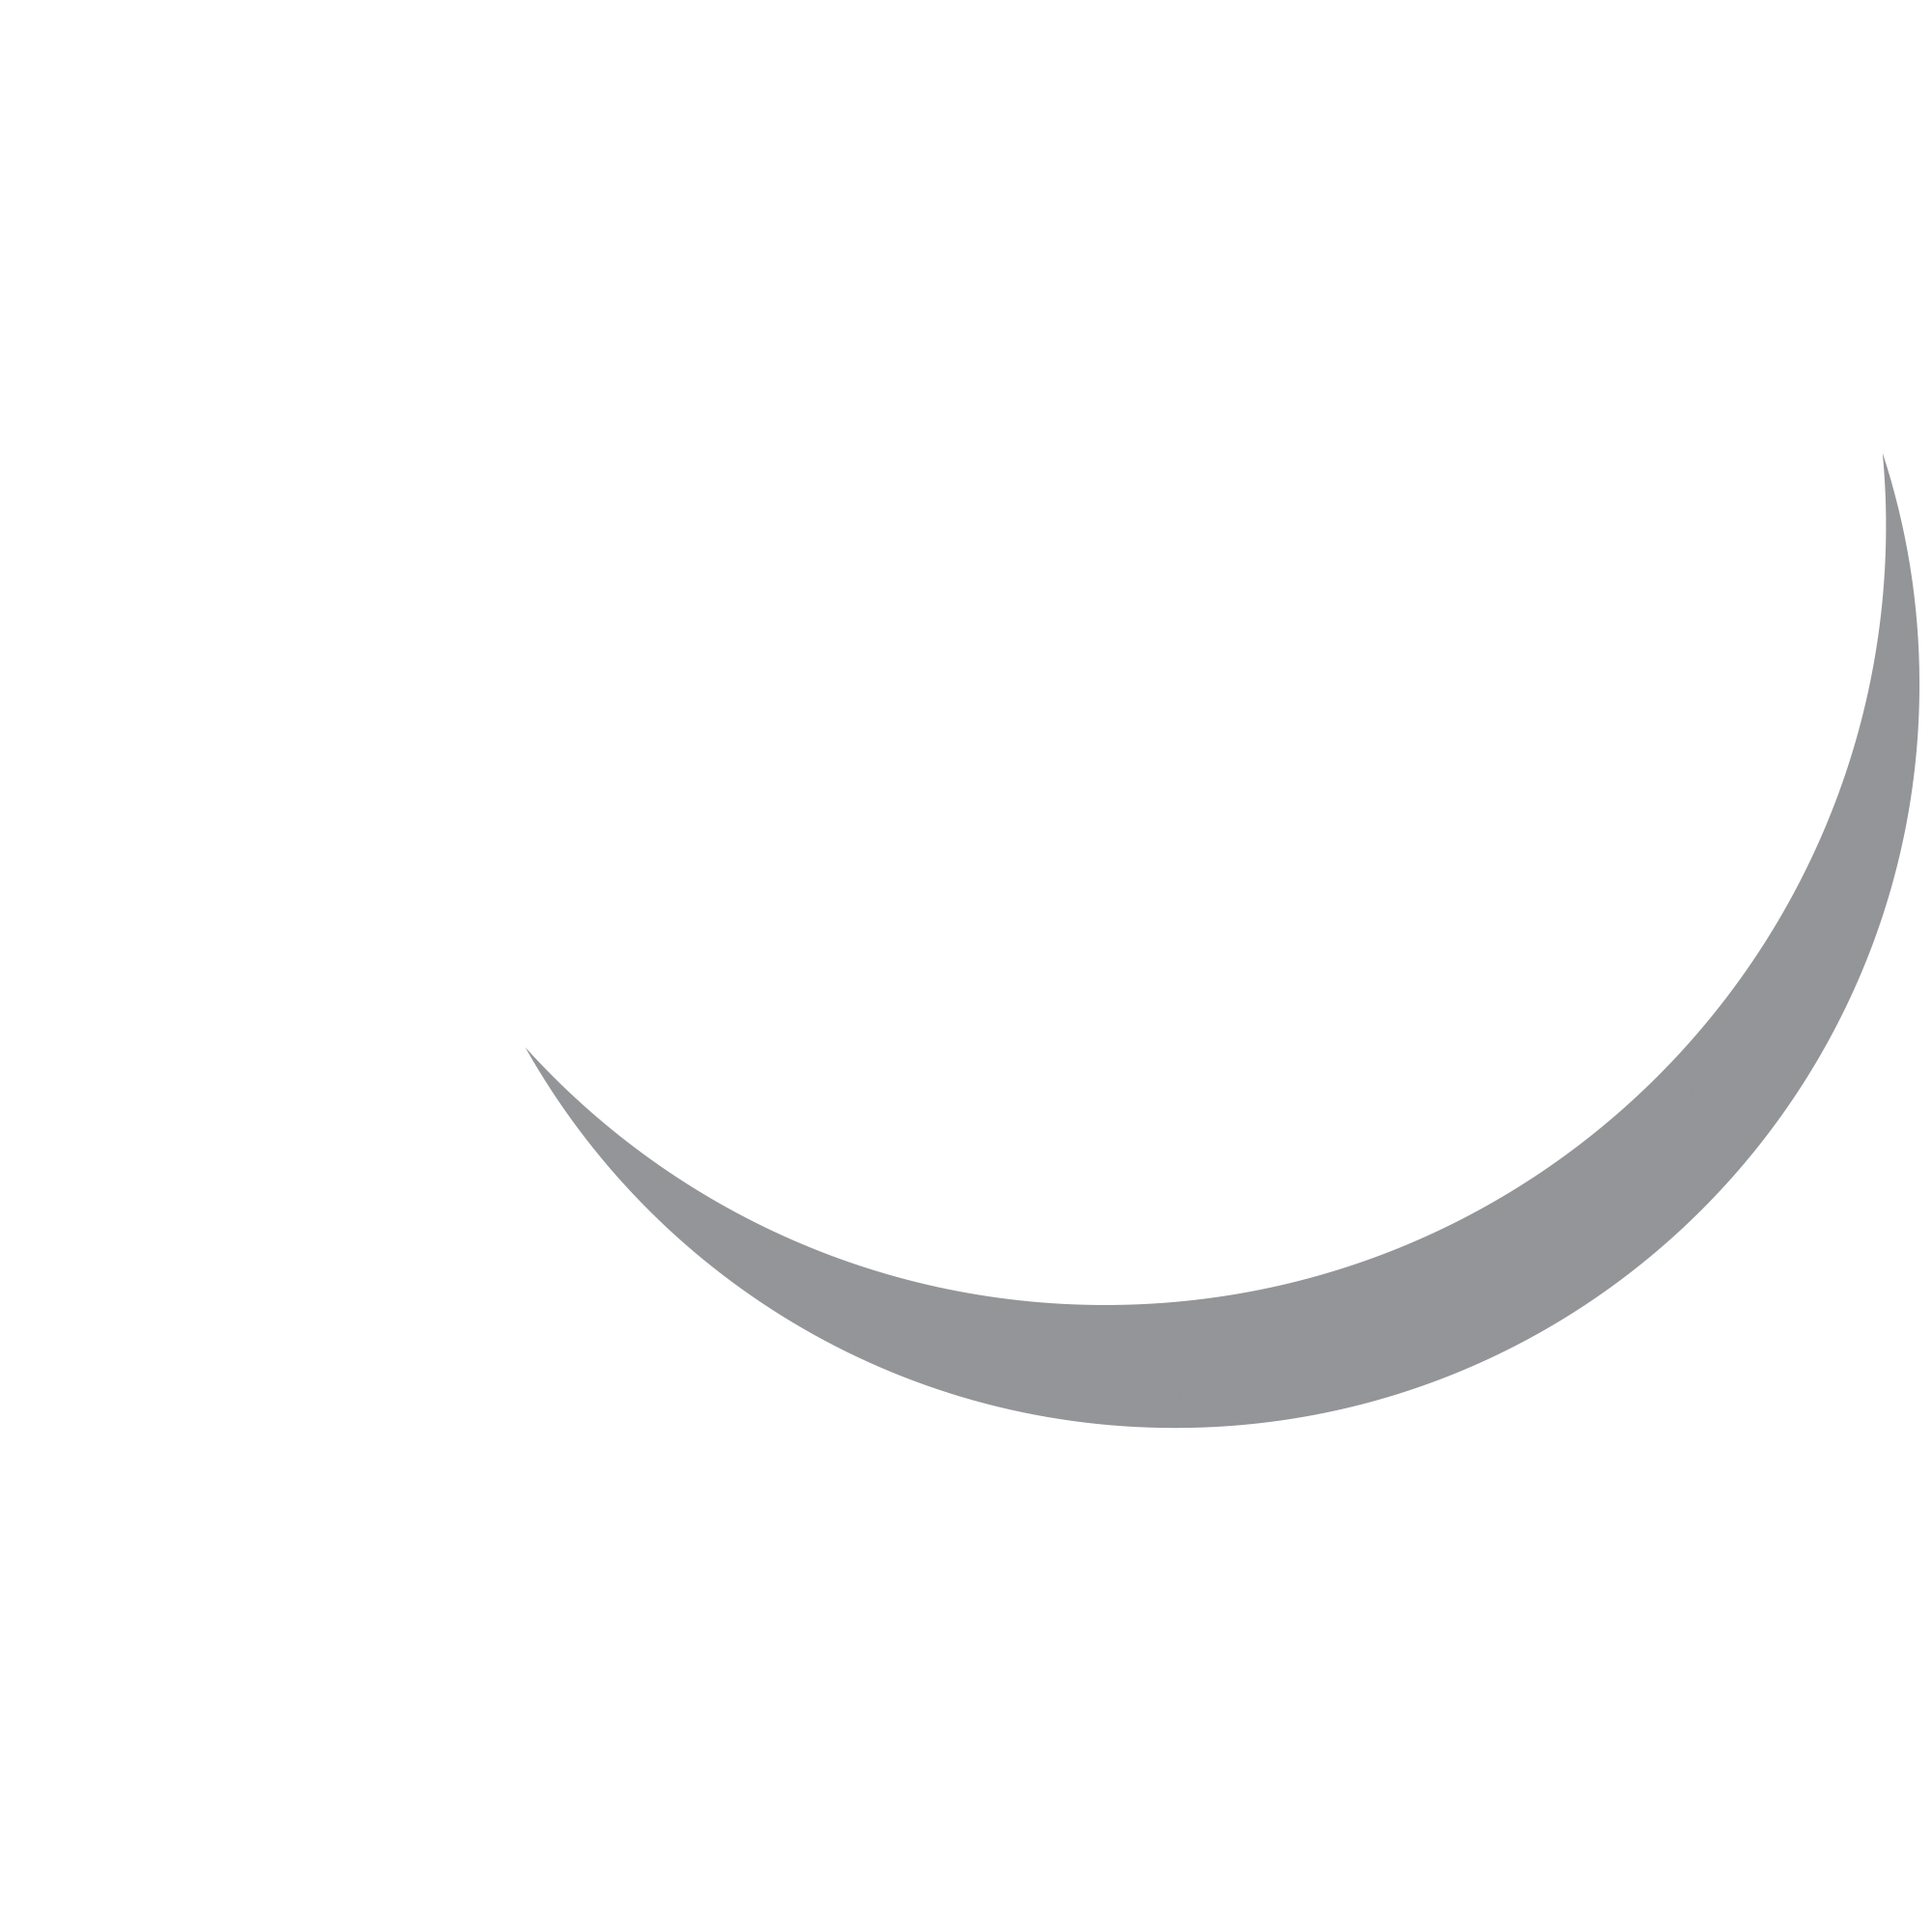 holistic concept - logo